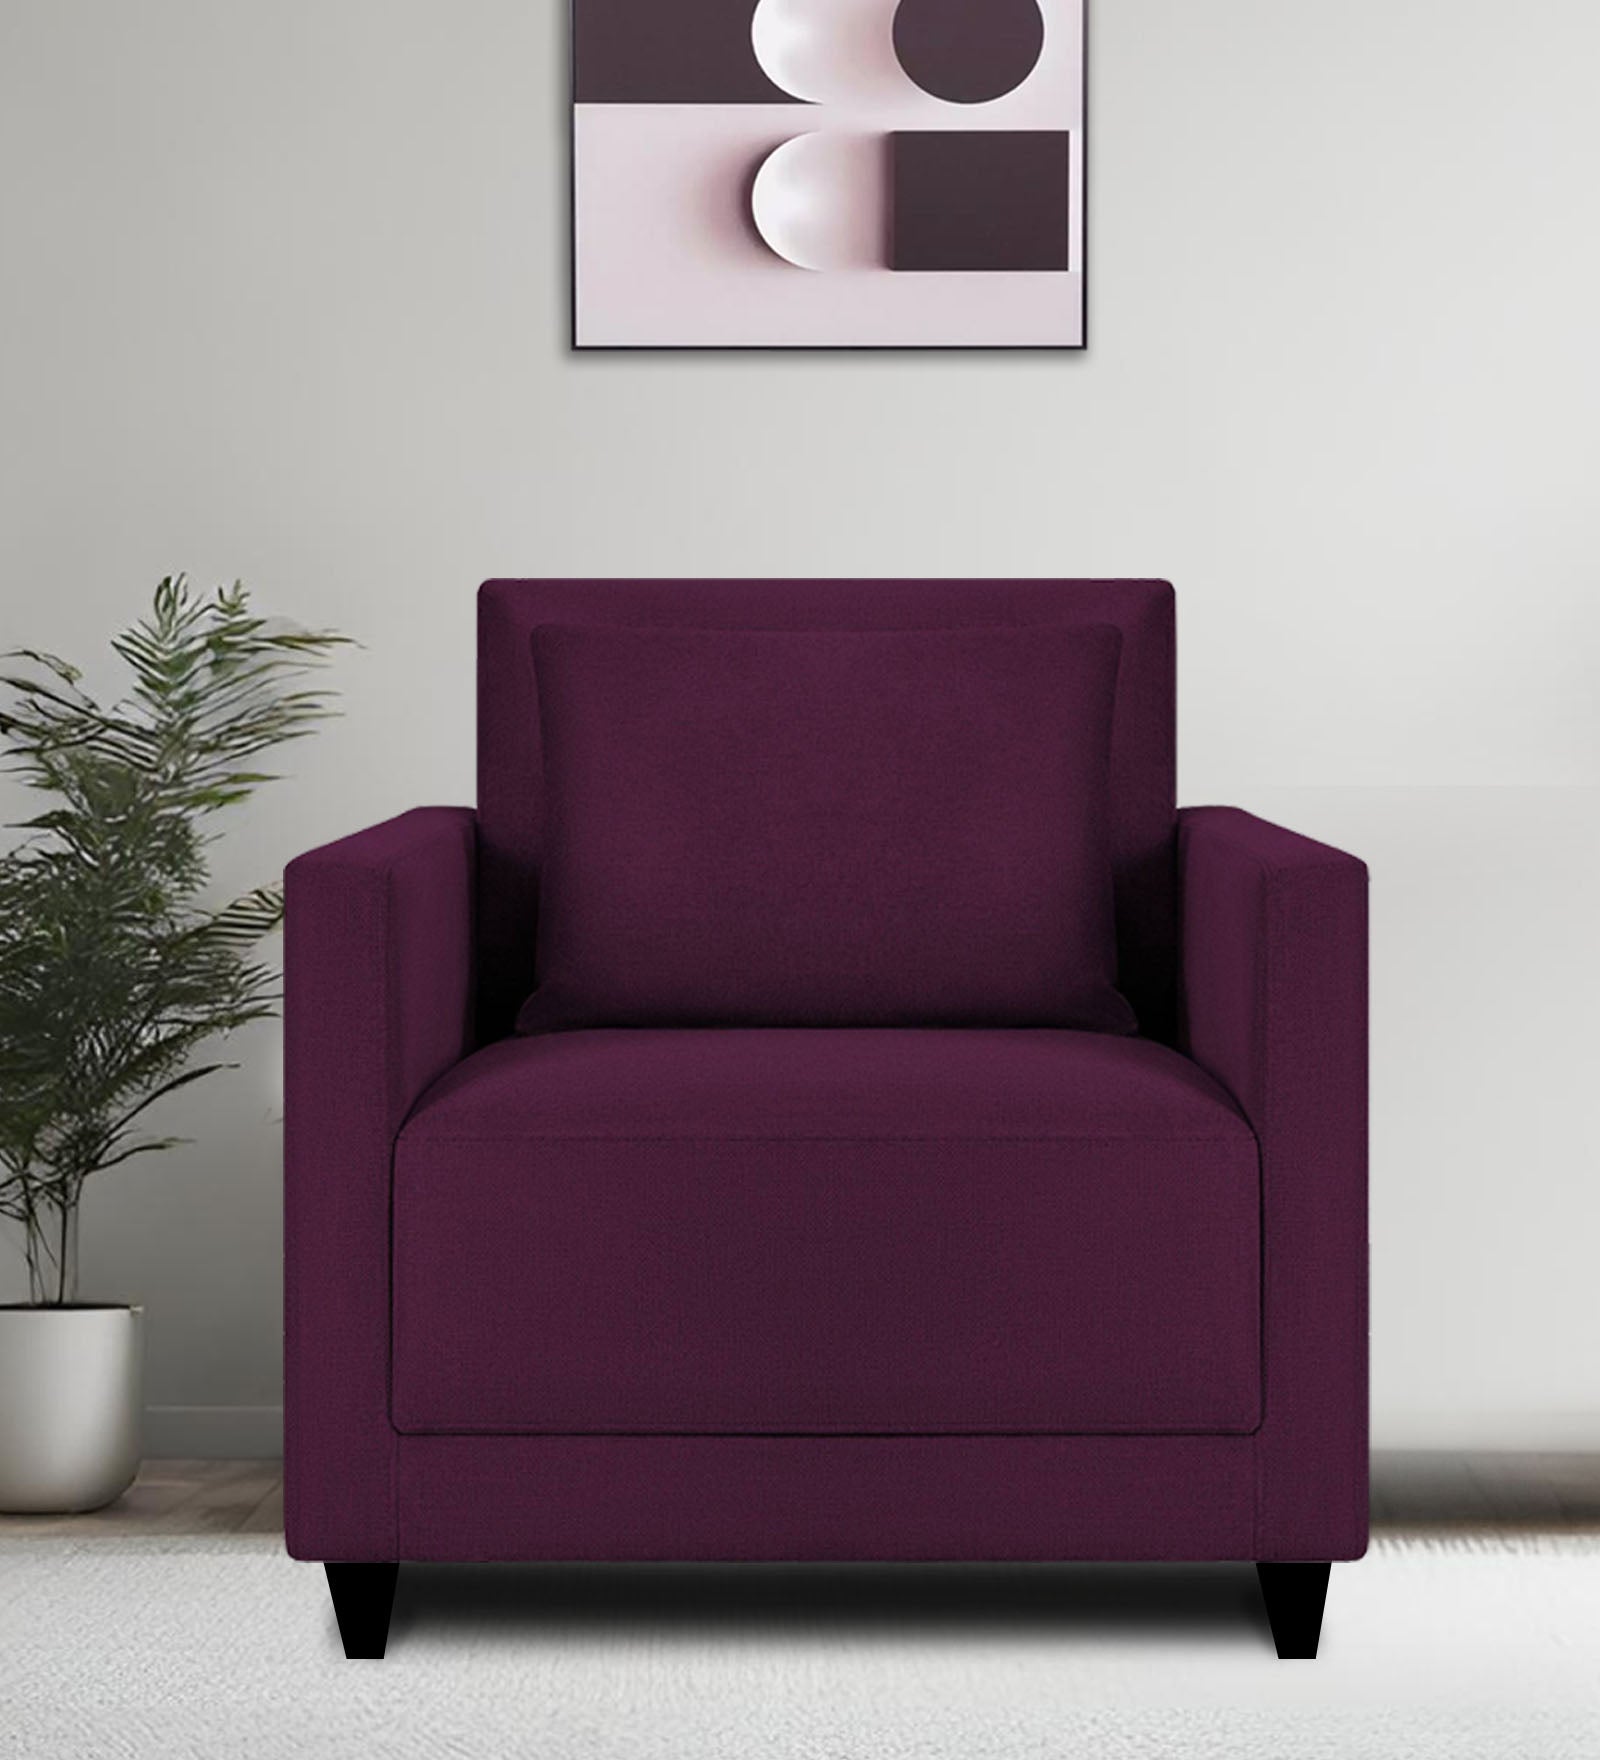 Kera Fabric 1 Seater Sofa in Greek Purple Colour